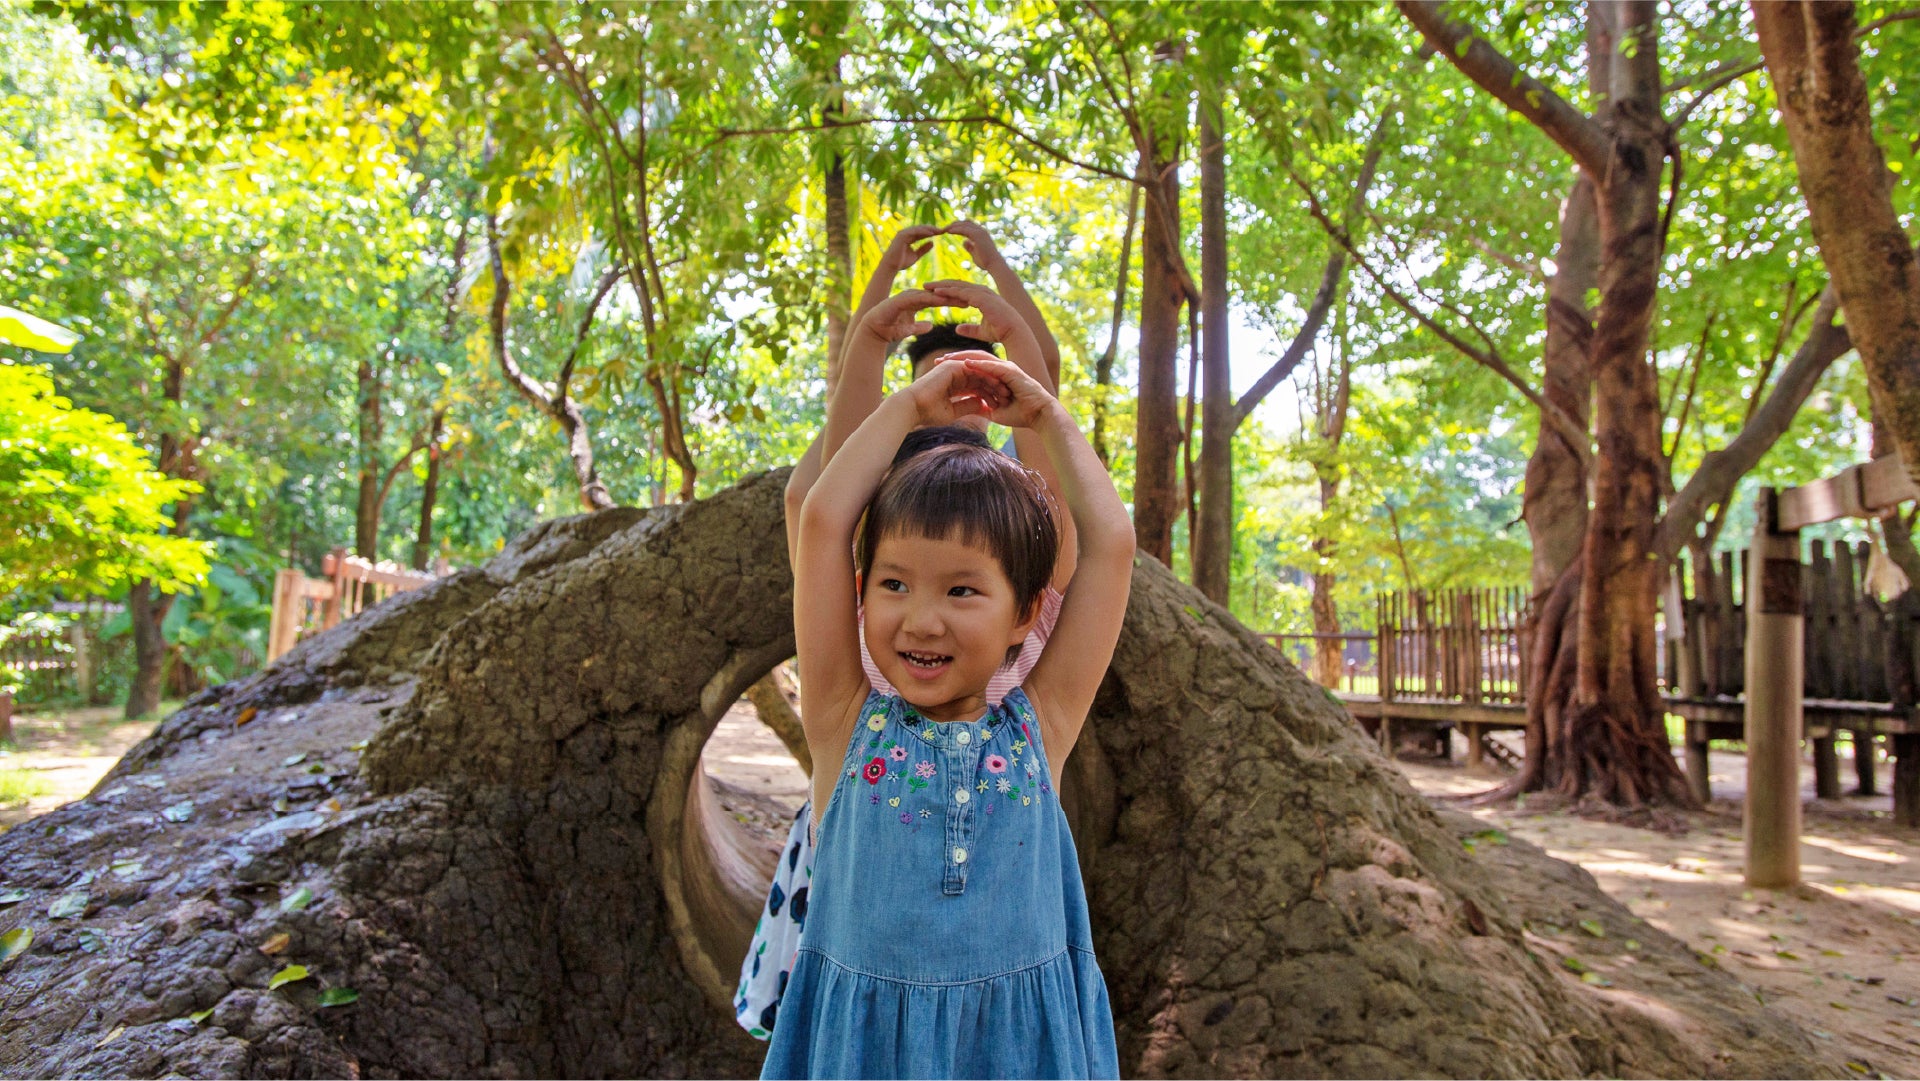 Imagen de niños pequeños felices en el bosque disfrutando de la naturaleza y el sol.